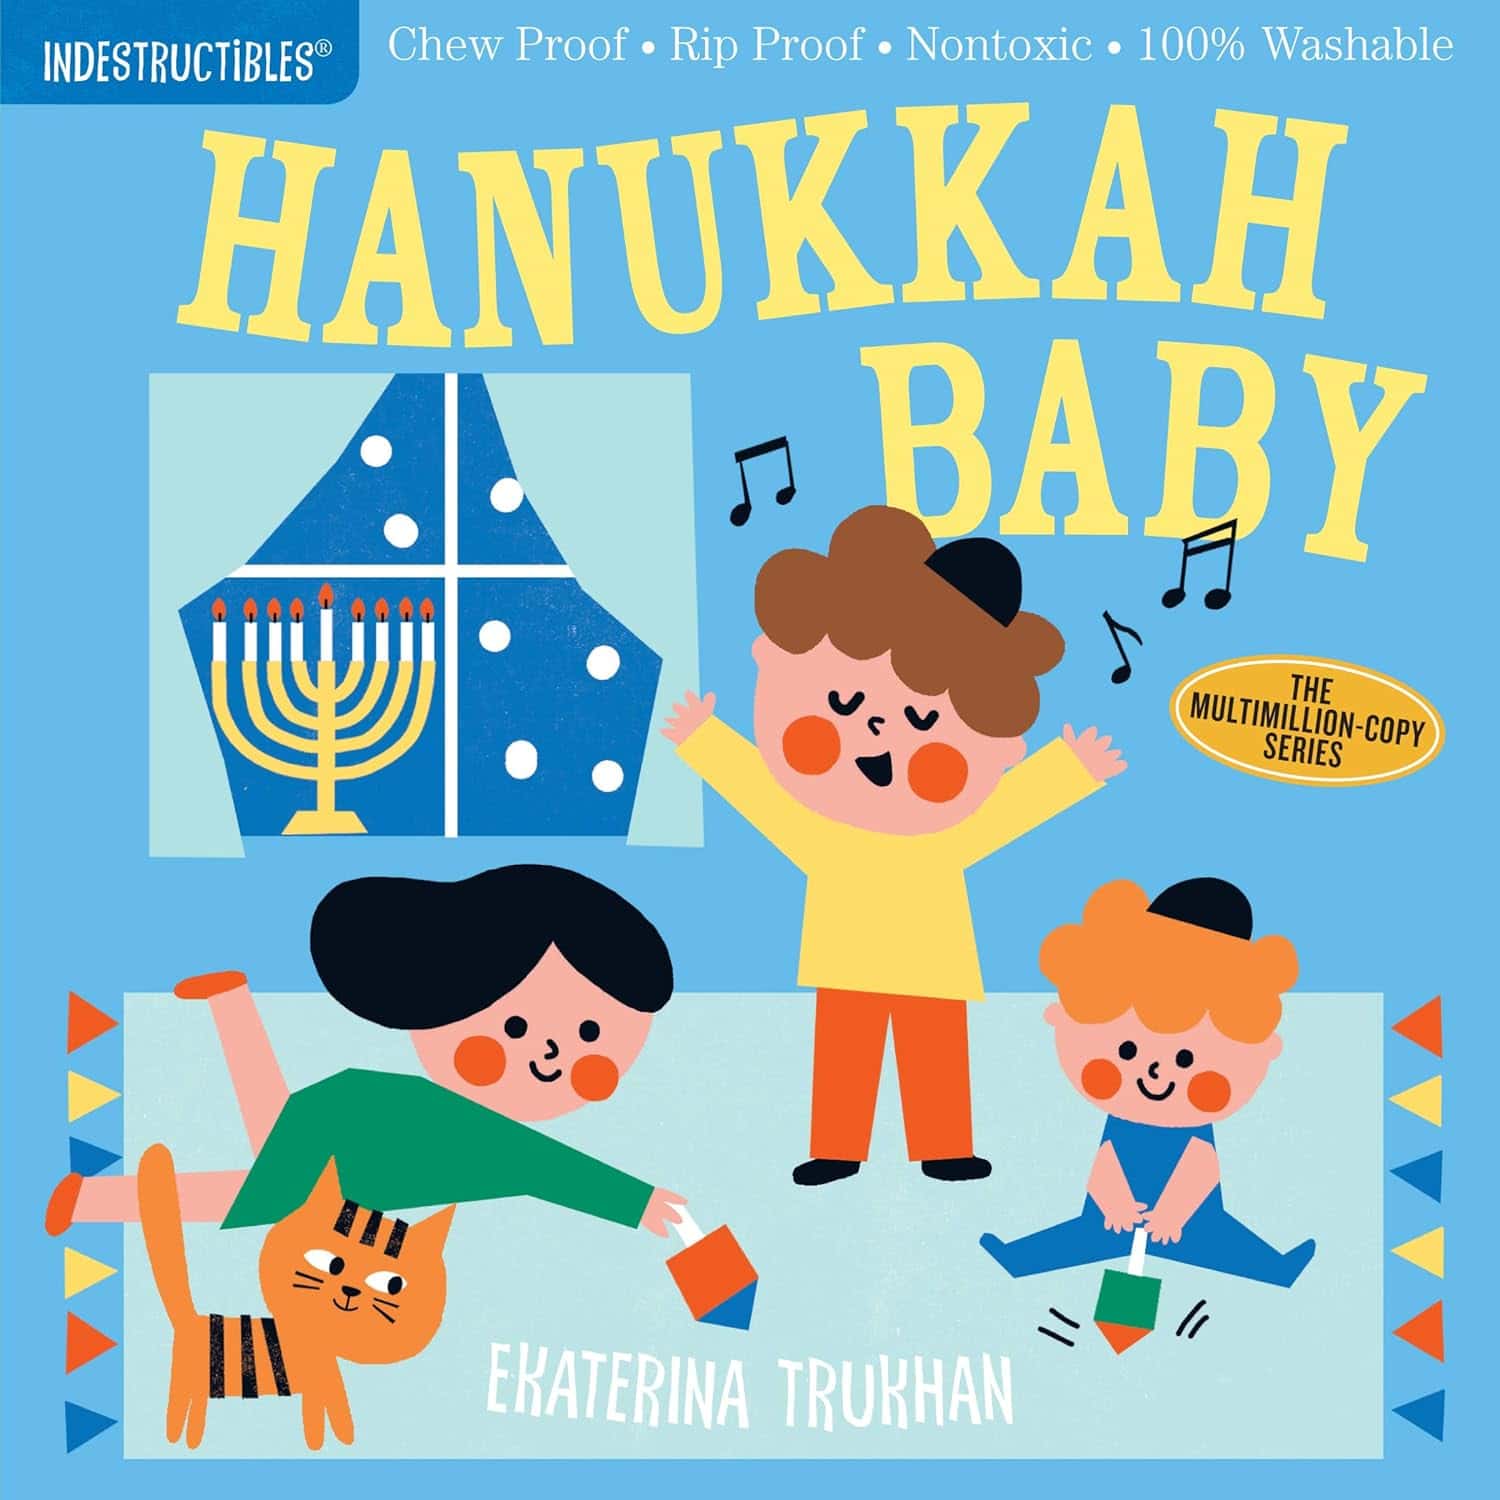 "Indestructibles: Hanukkah Baby" by Amy Pixton